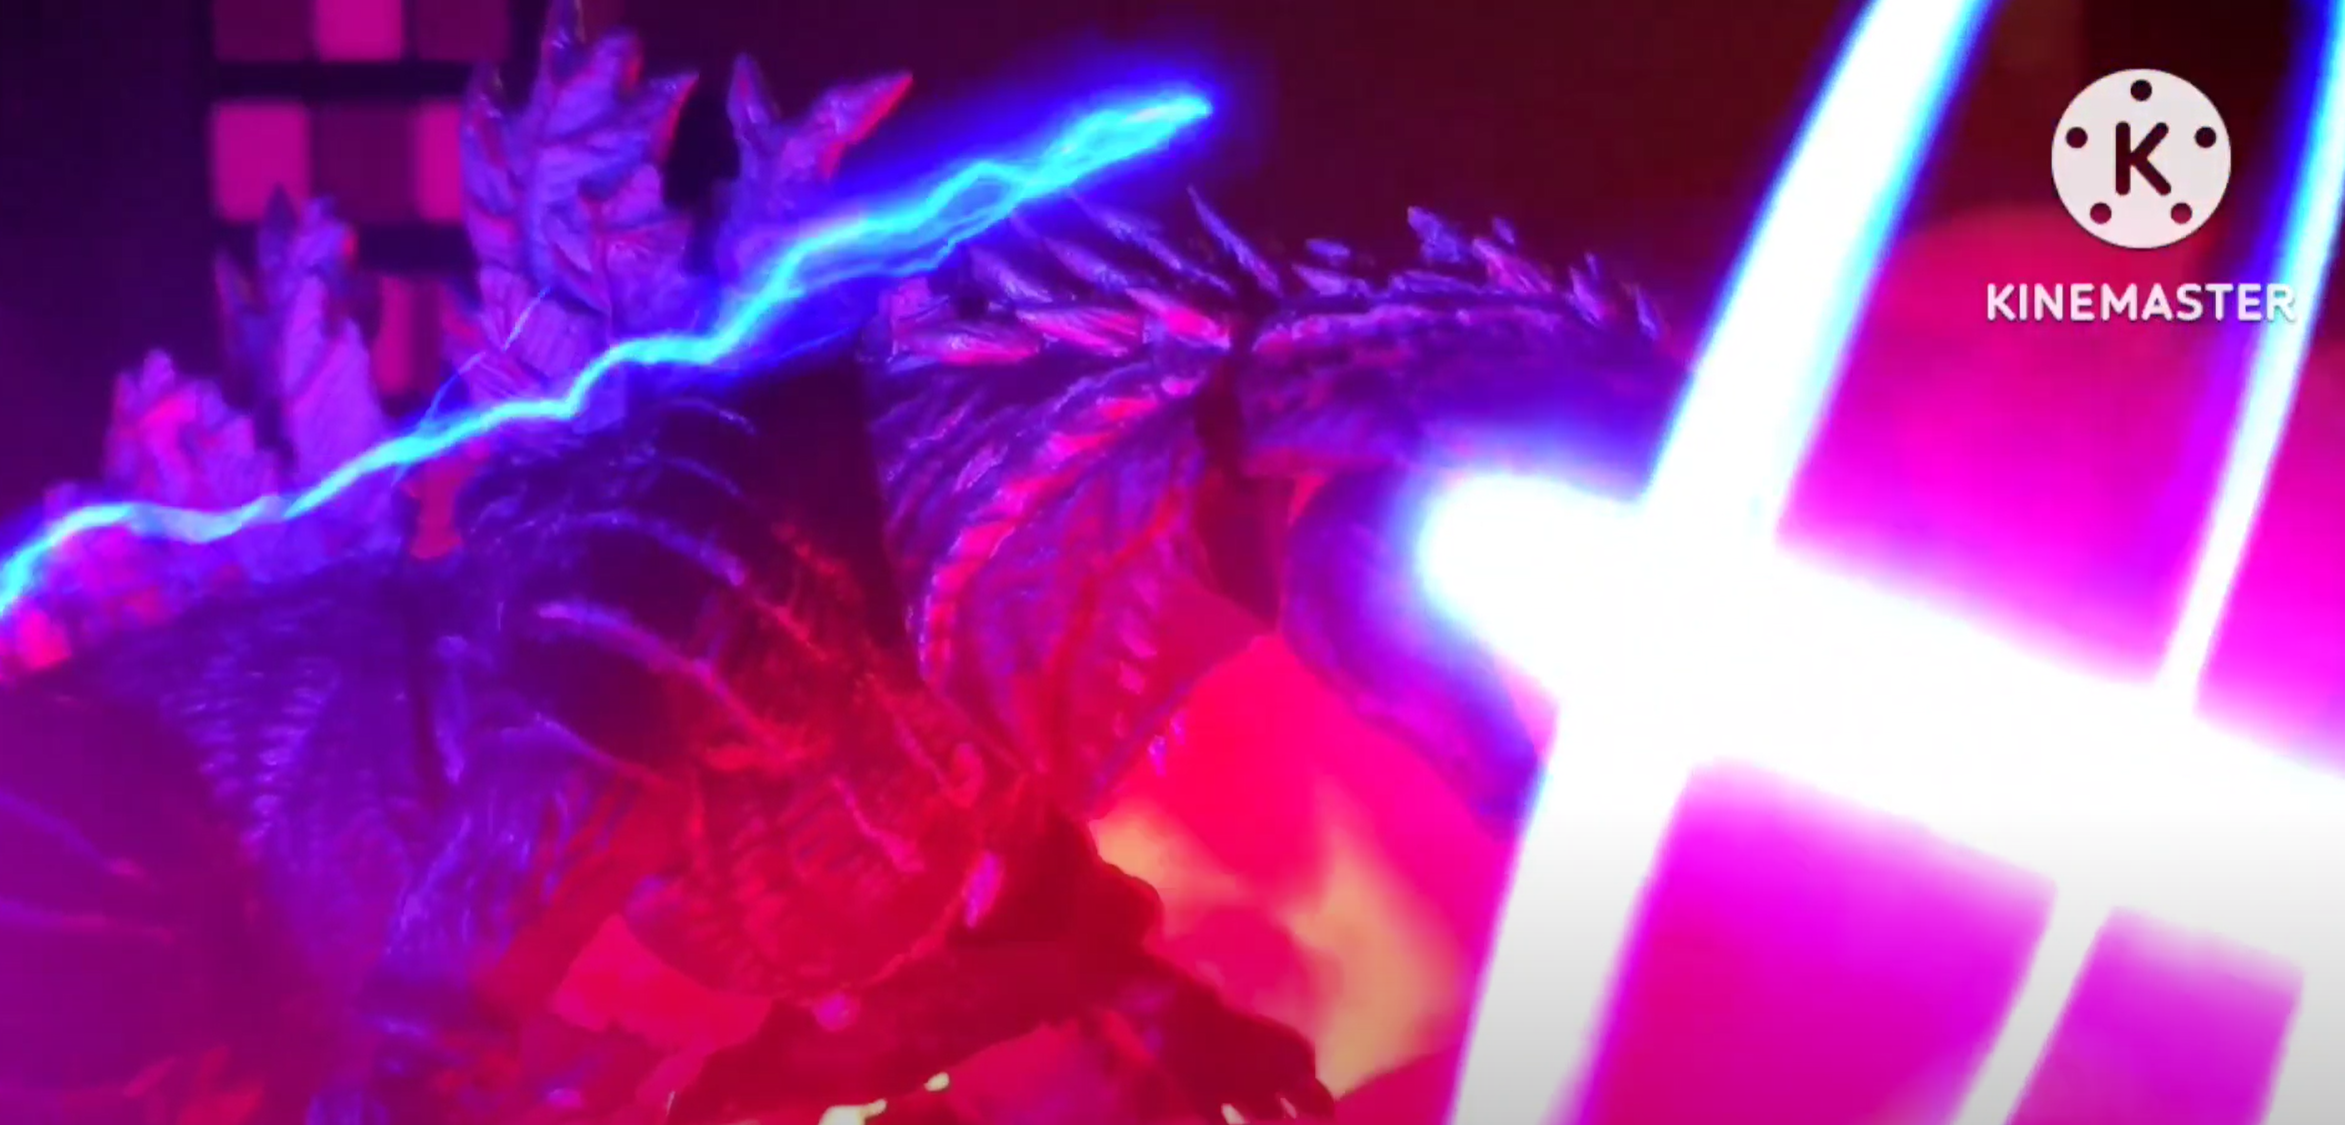 Godzilla Ultima, Monsterverse Motions Universe Wiki